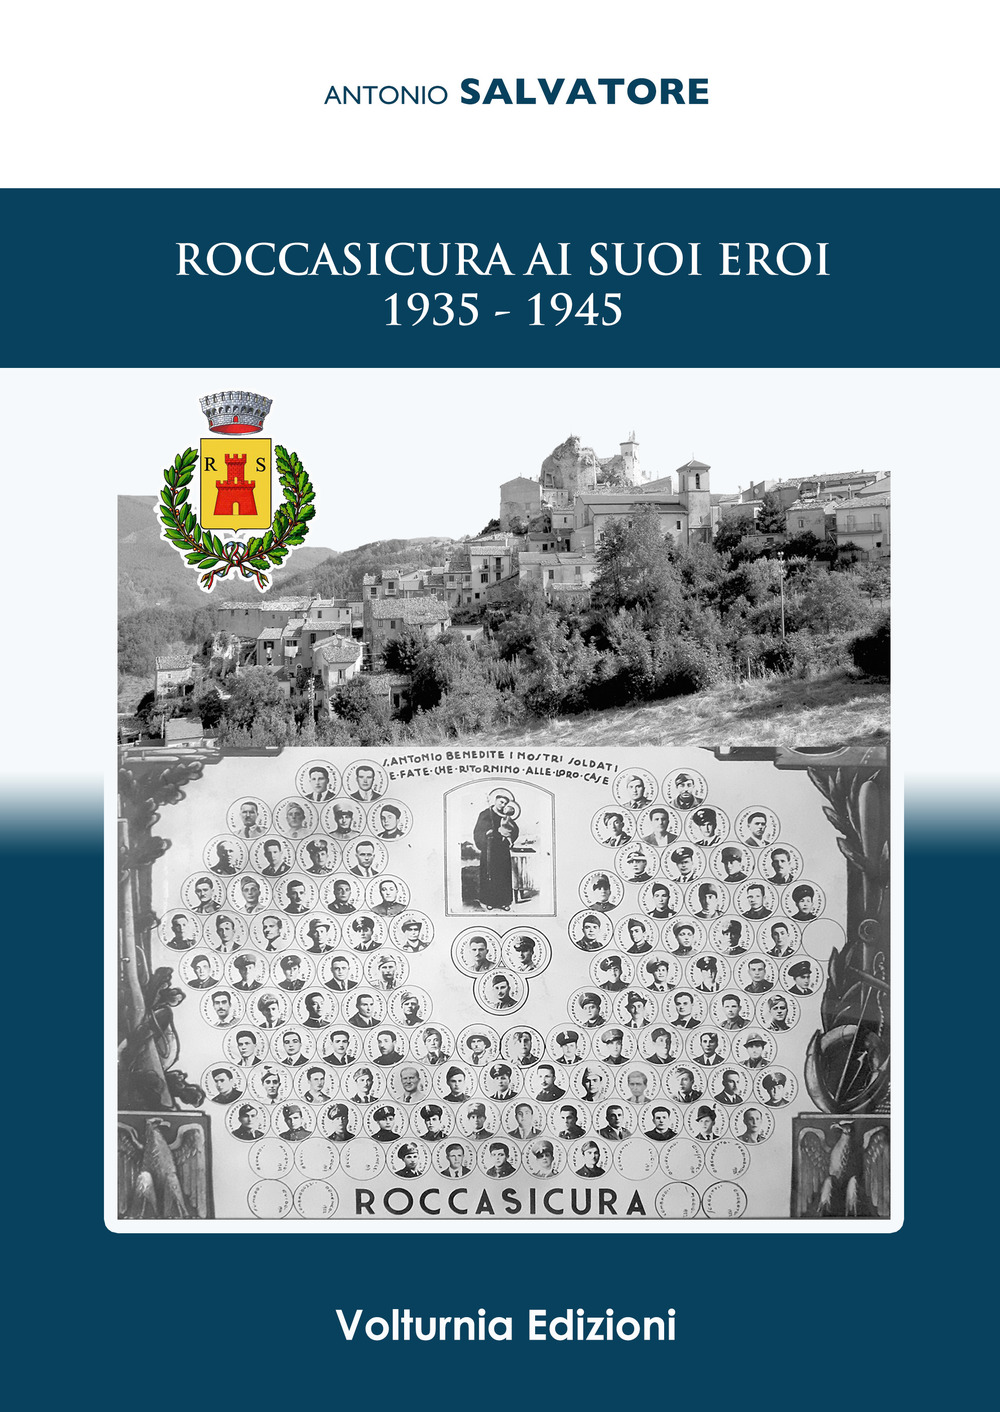 Libri Antonio Salvatore - Roccasicura Ai Suoi Eroi (1935-1945) NUOVO SIGILLATO, EDIZIONE DEL 13/09/2019 SUBITO DISPONIBILE